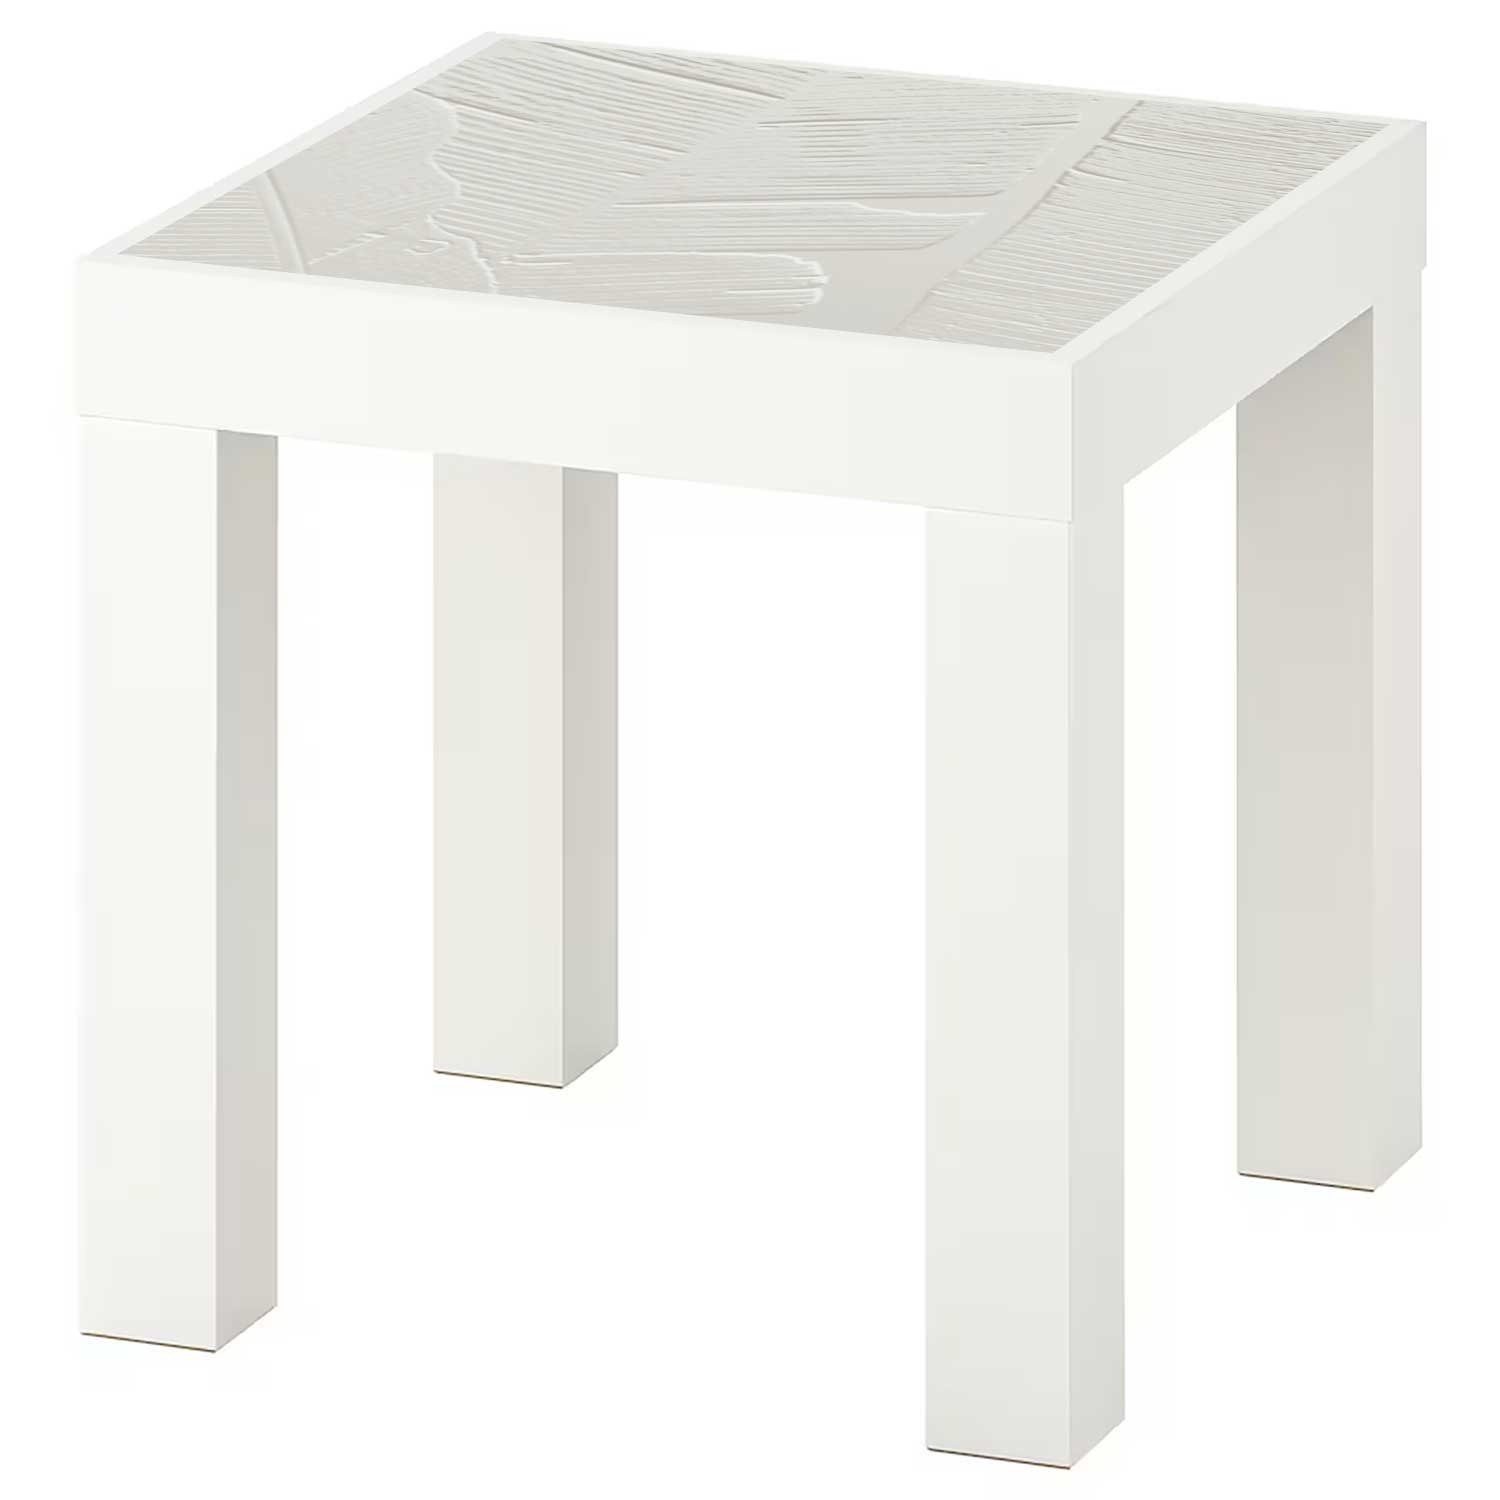 Möbelfolie für IKEA Lack Tisch 35x35 cm 'Bananenblätter'